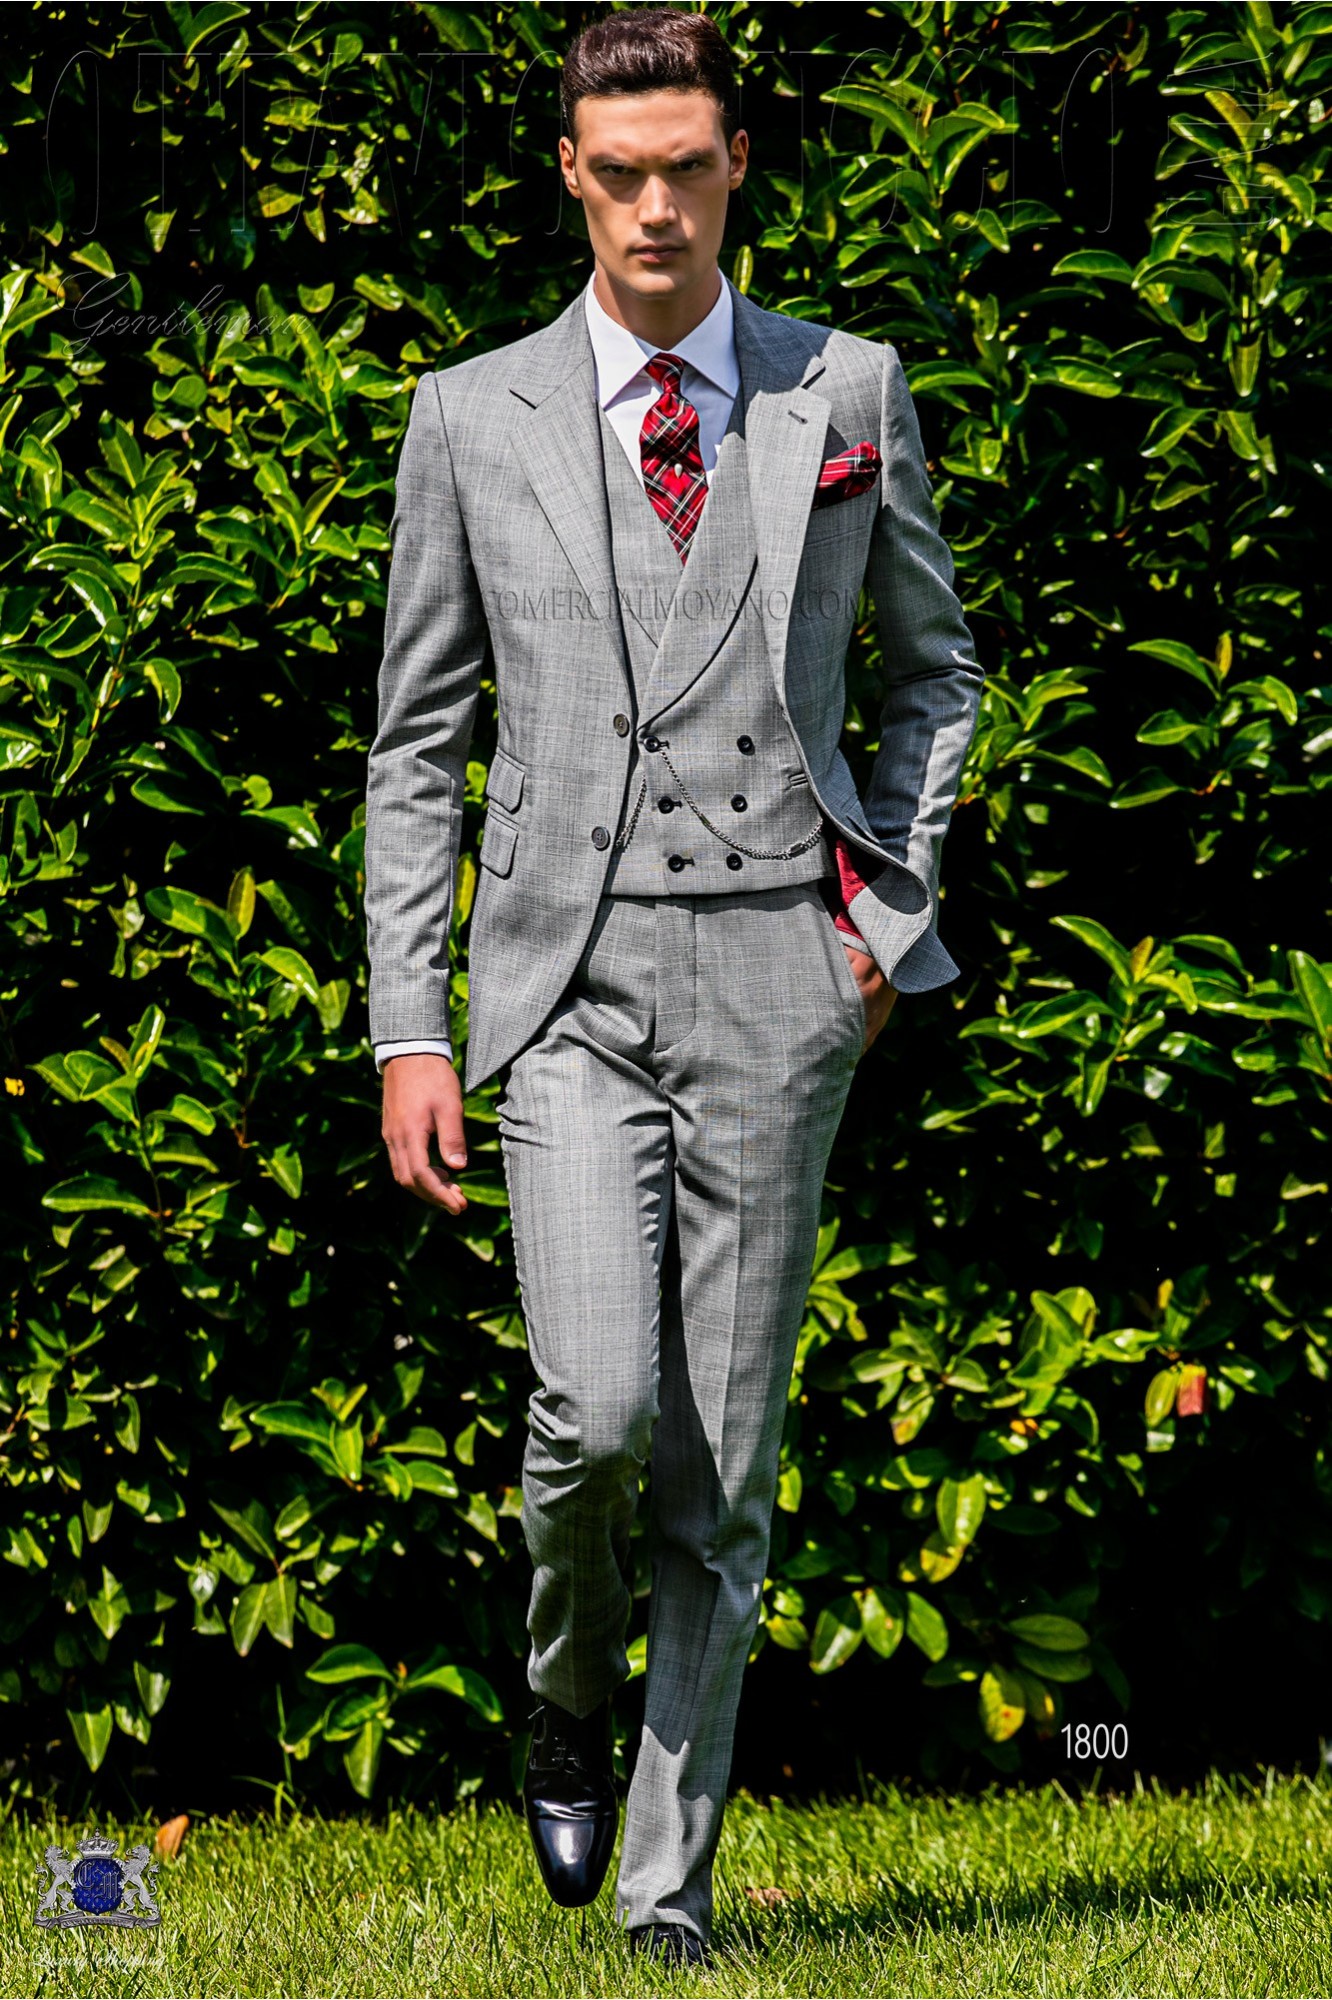 Traje de novio Príncipe de Gales gris y rojo modelo: 1800 Mario Moyano colección Gentleman